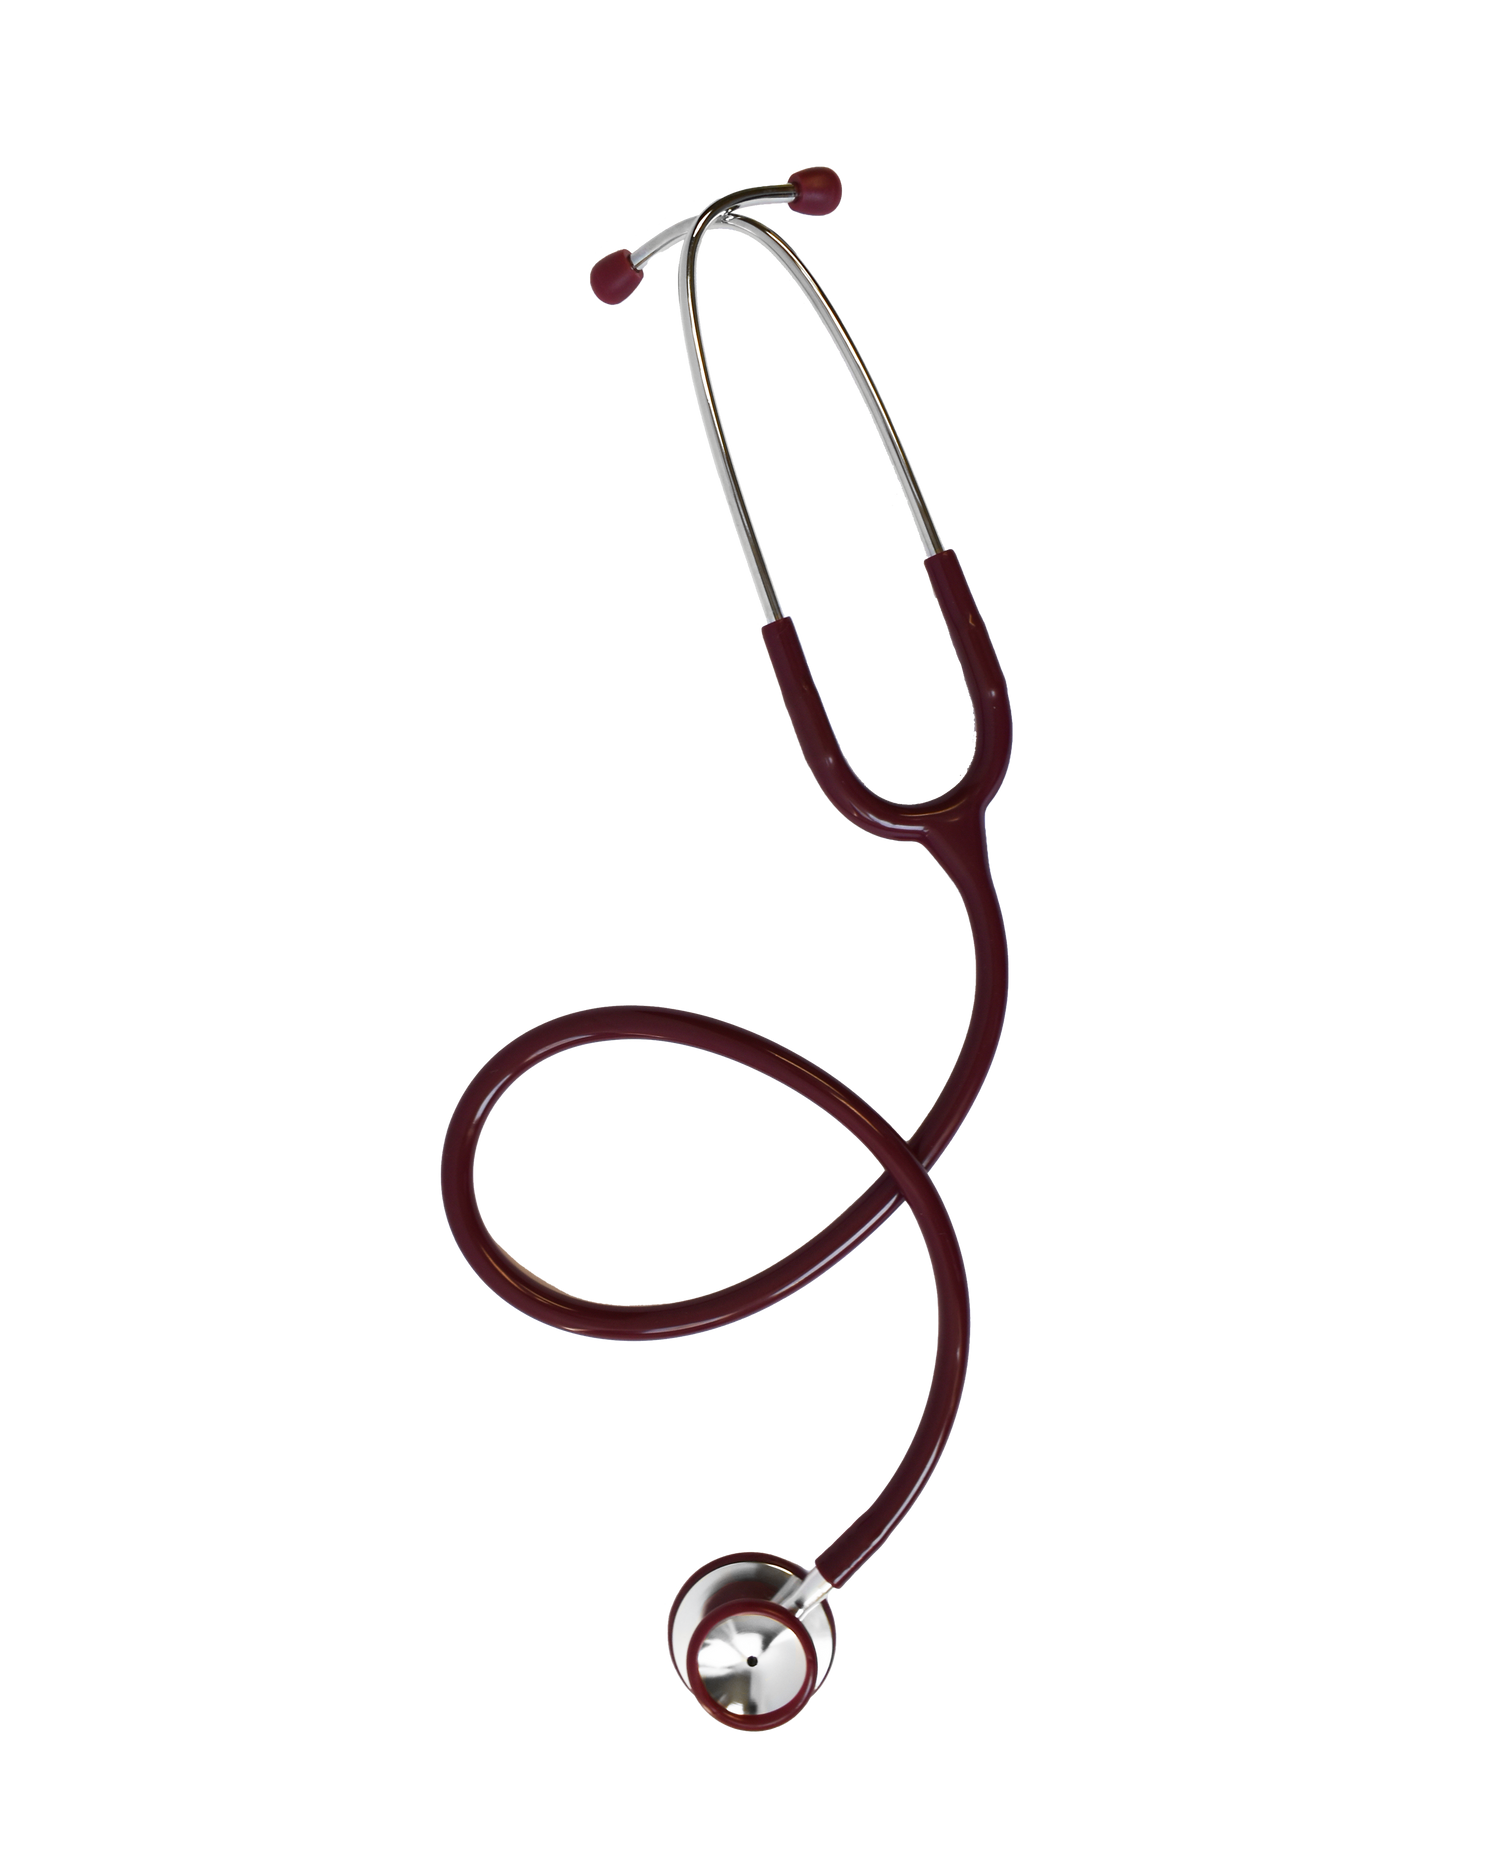 GENIX Dual Head Adult Sethoscope Acoustic Stethoscope (BLACK) Acoustic stethoscope  Stethoscope (Black)